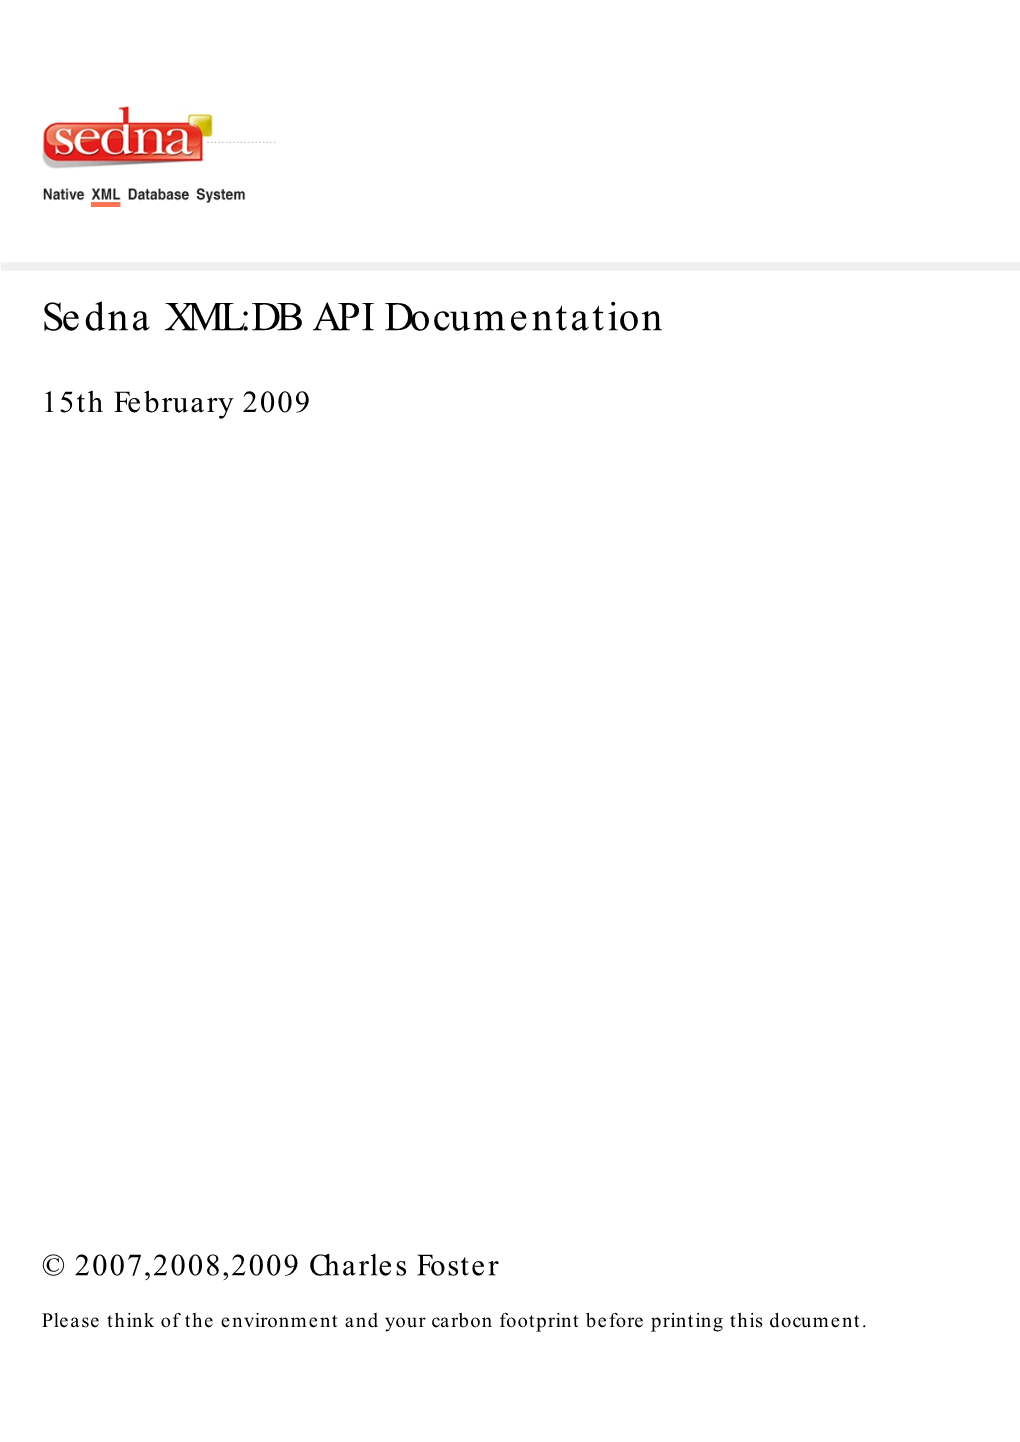 Sedna XML:DB API Documentation